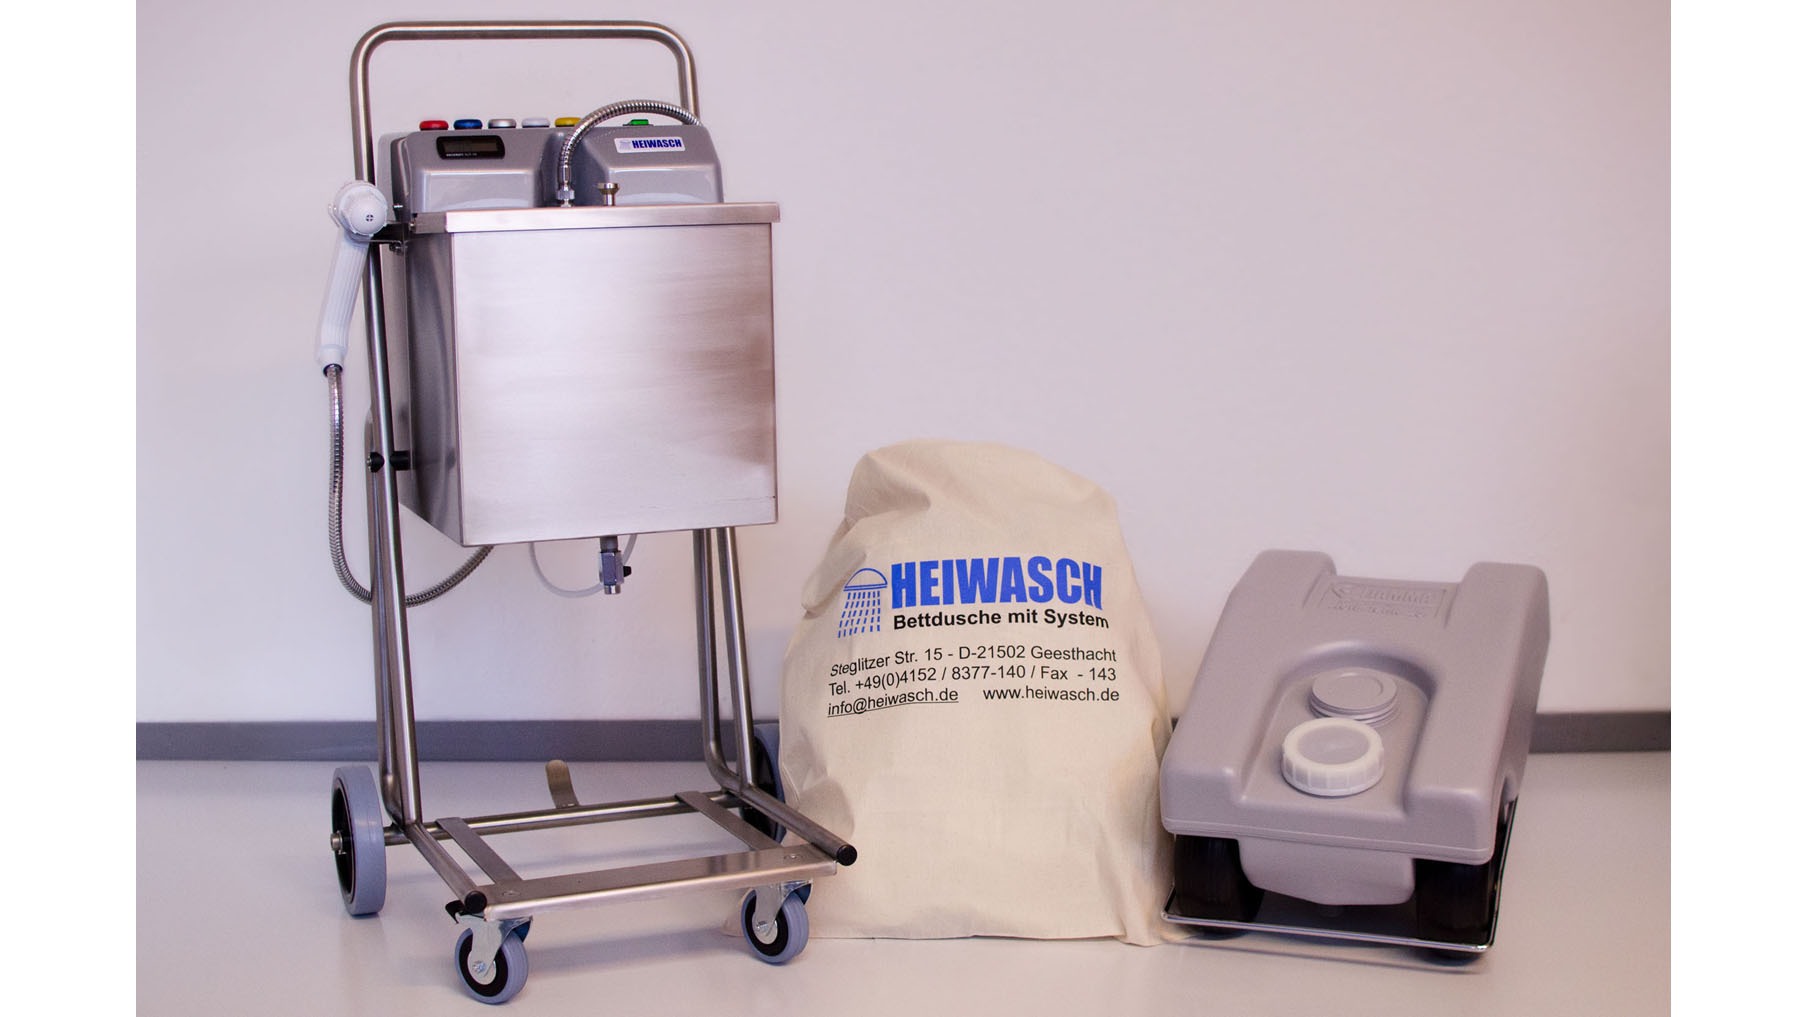 Heiwasch Patientenduschsystem: Duschgerät mit Warmwasseraufbereitung, Bettwanne und Abwasserwagen.